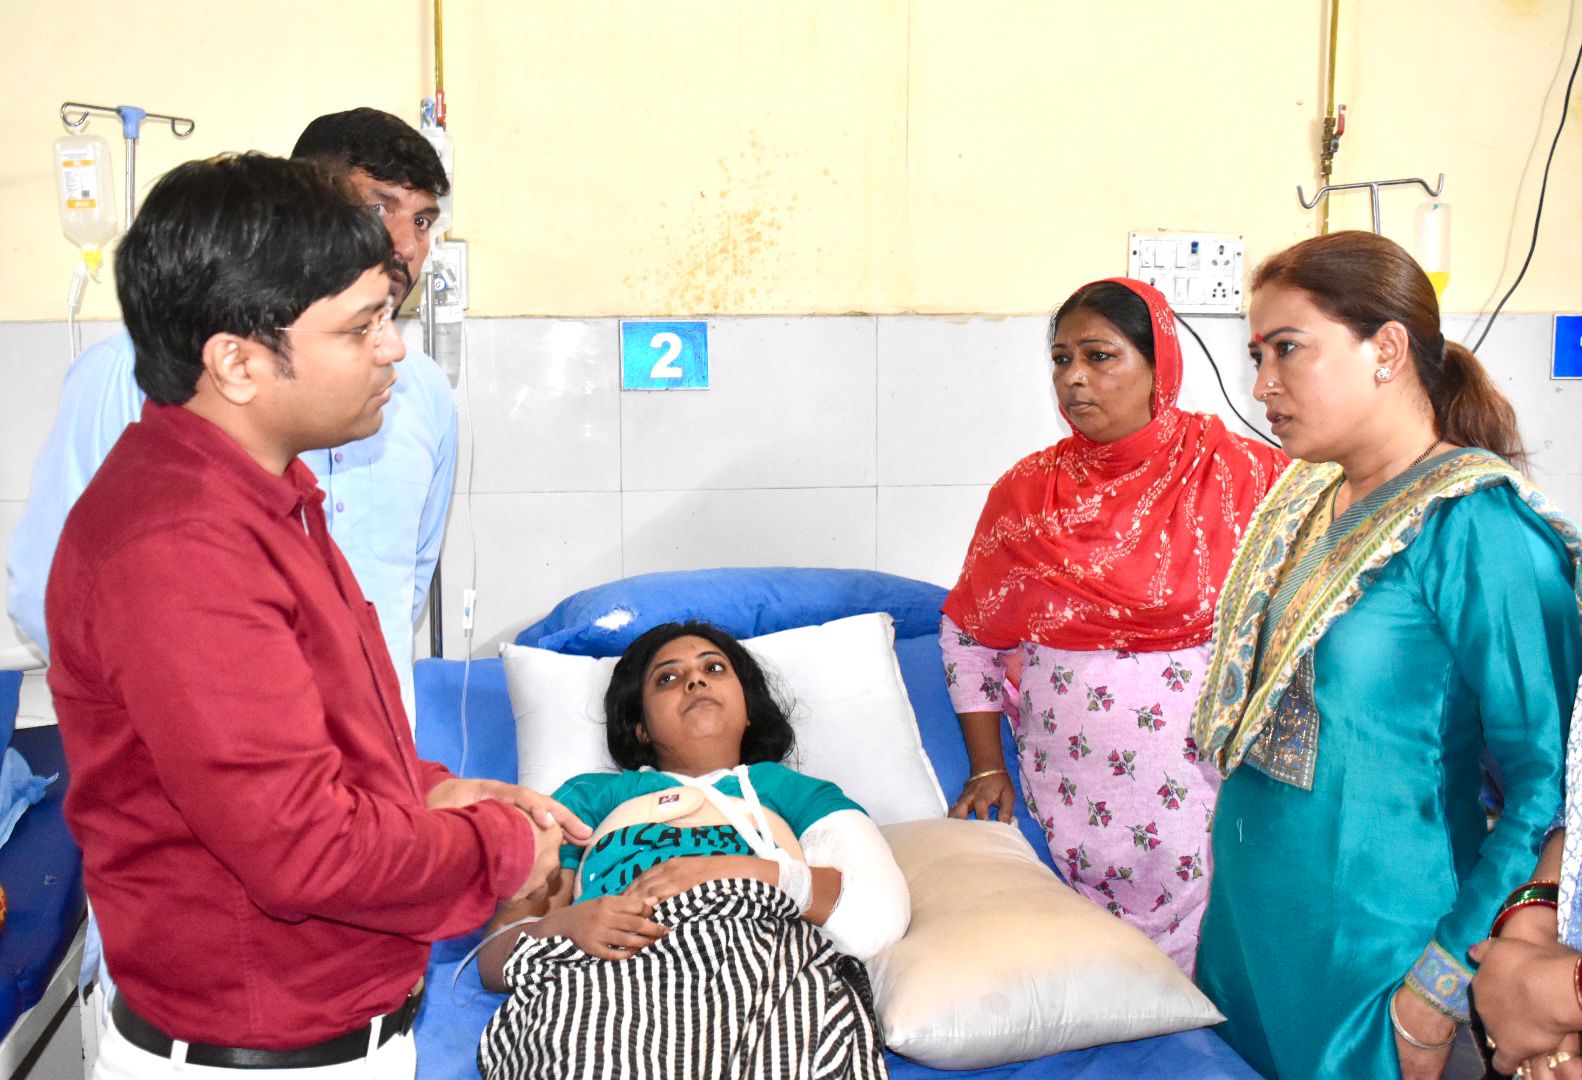 कैबिनेट मंत्री रेखा आर्या ने काशीपुर पहुंचकर सड़क हादसे में घायल श्रमिकों का जाना हालचाल,डॉक्टरों को दिए घायलों के समुचित इलाज करने के निर्देश